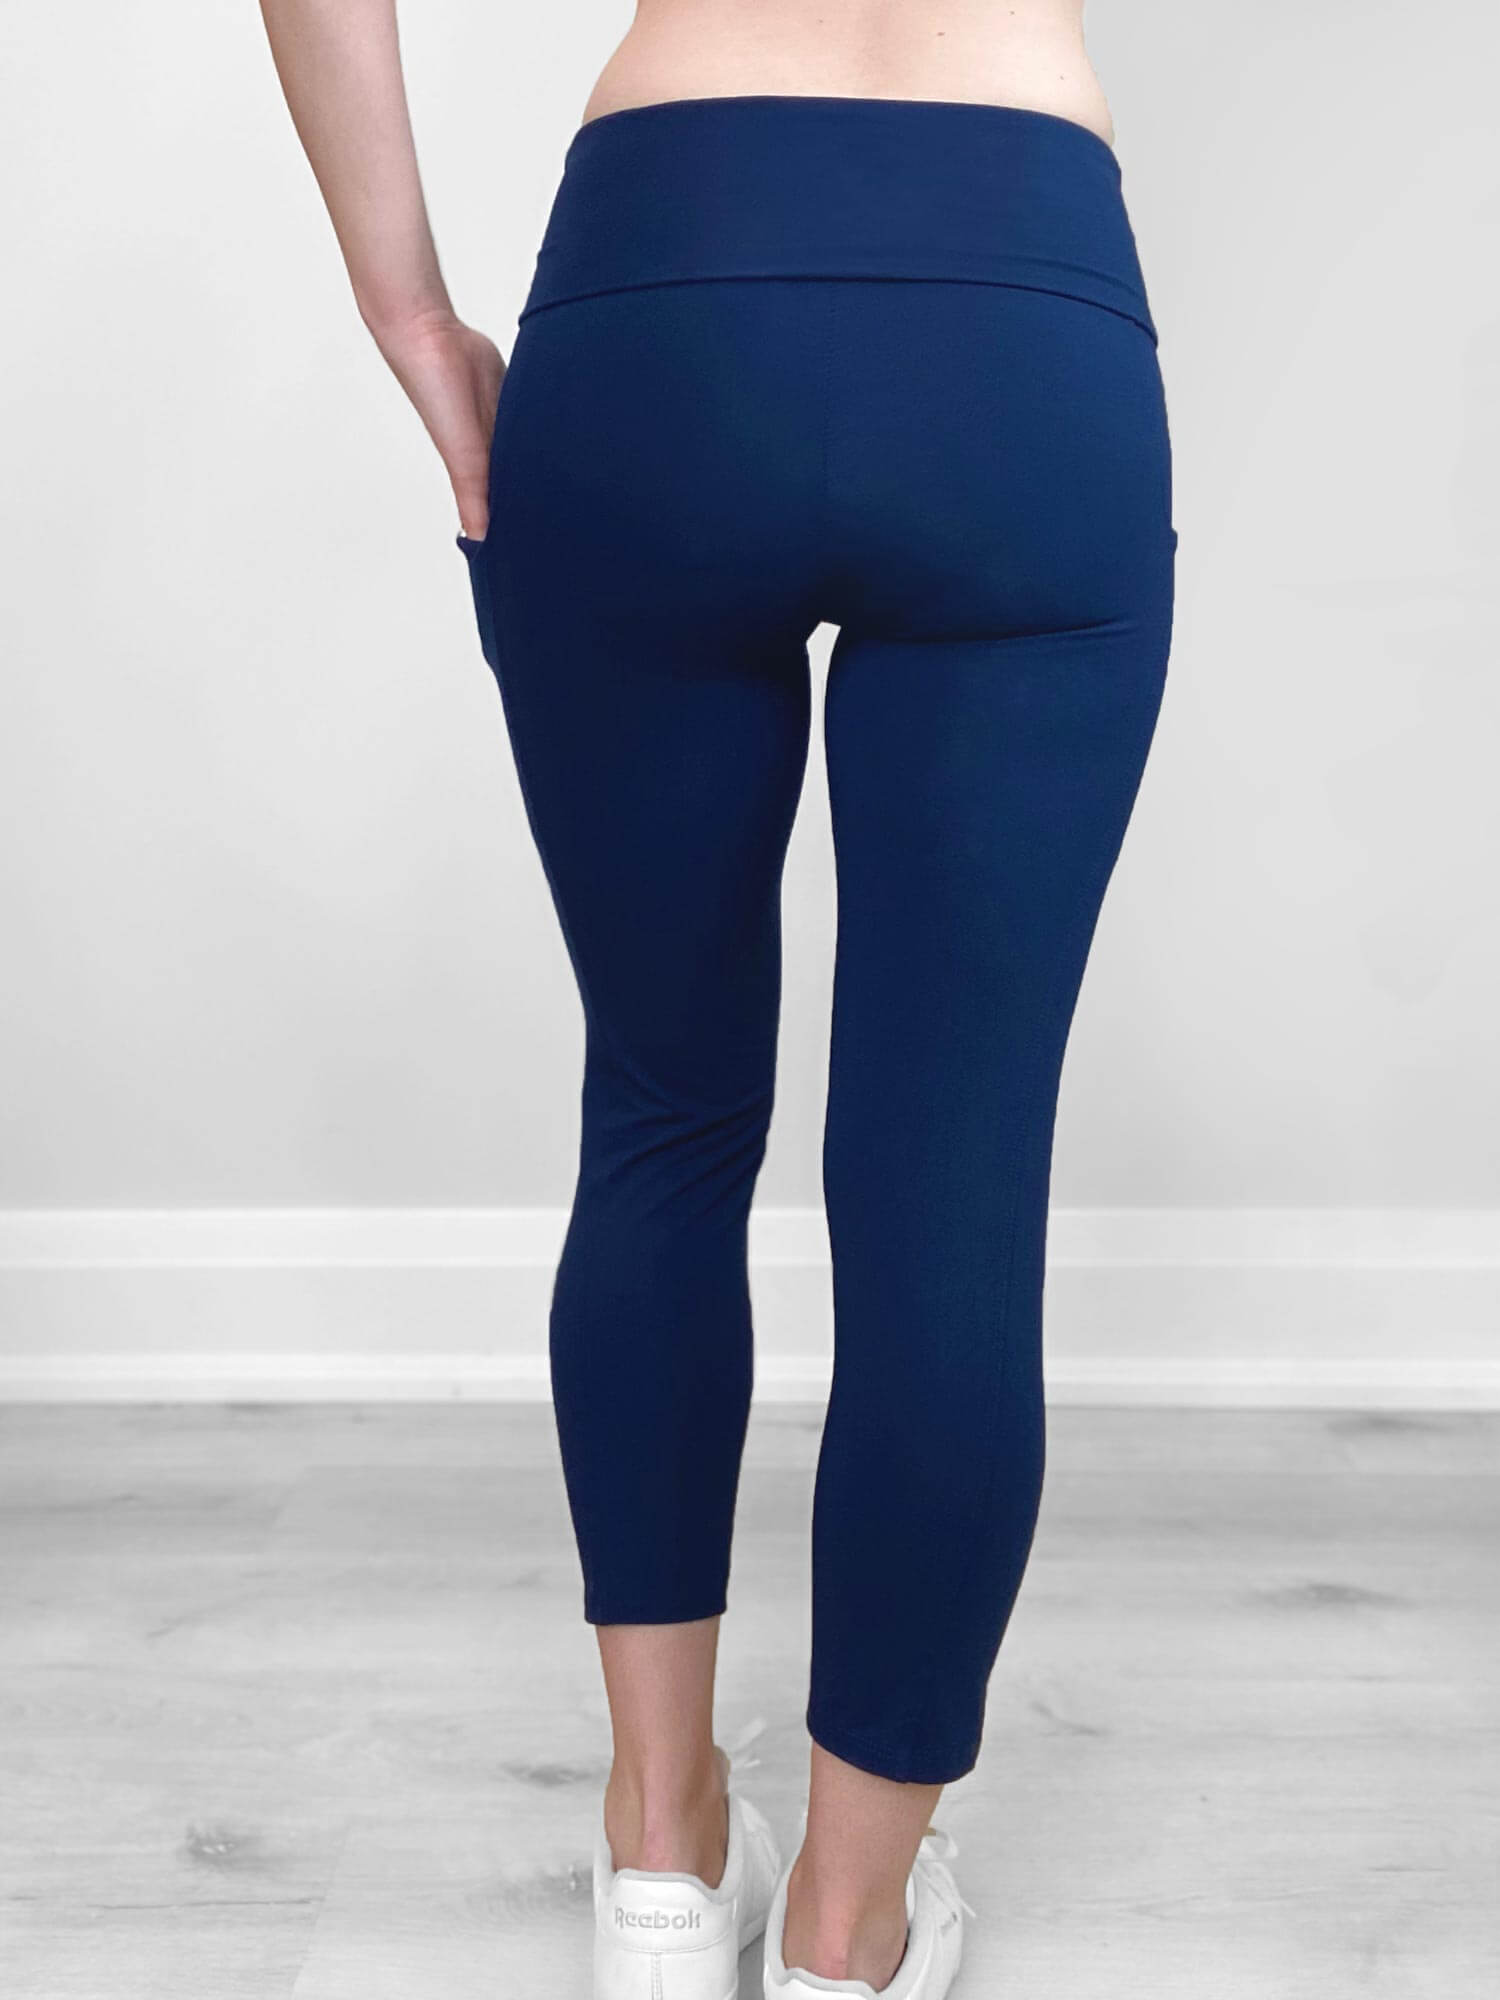 Buy SATINAHigh Waisted Leggings for Women - Capri, Full Length, Fleece &  with Pockets Women's Leggings … Online at desertcartSeychelles